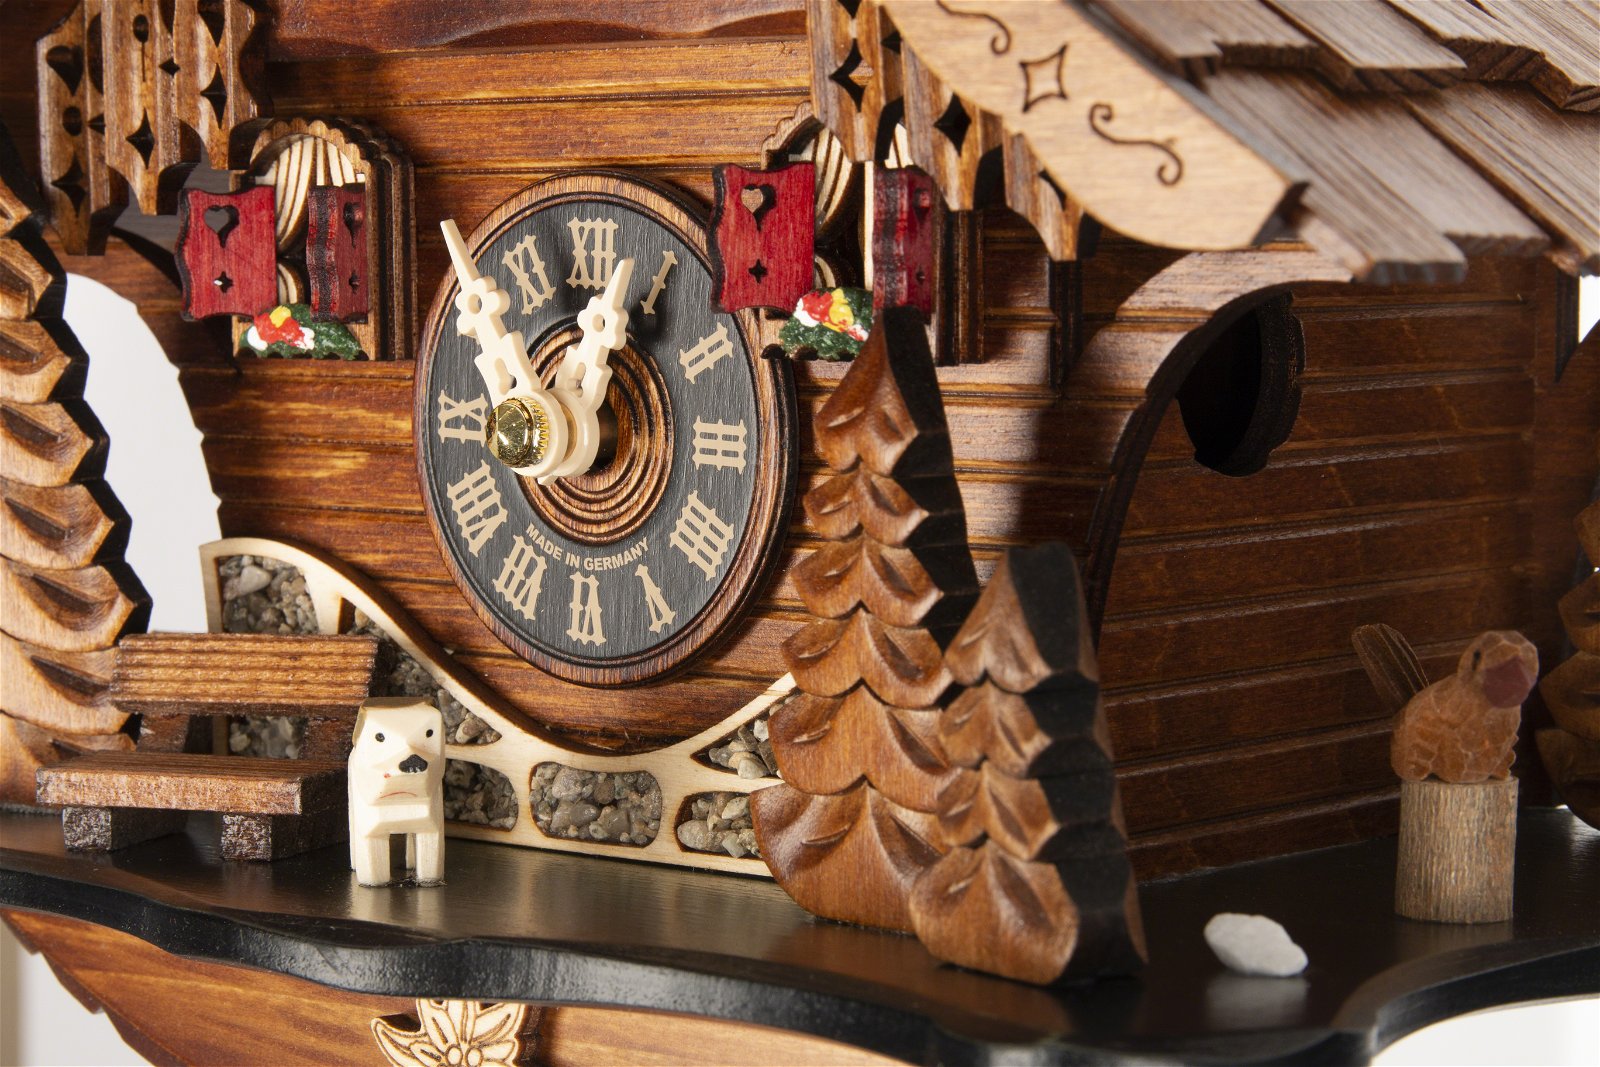 Kuckucksuhr Quarz-Uhrwerk Chalet-Stil 25cm von Engstler